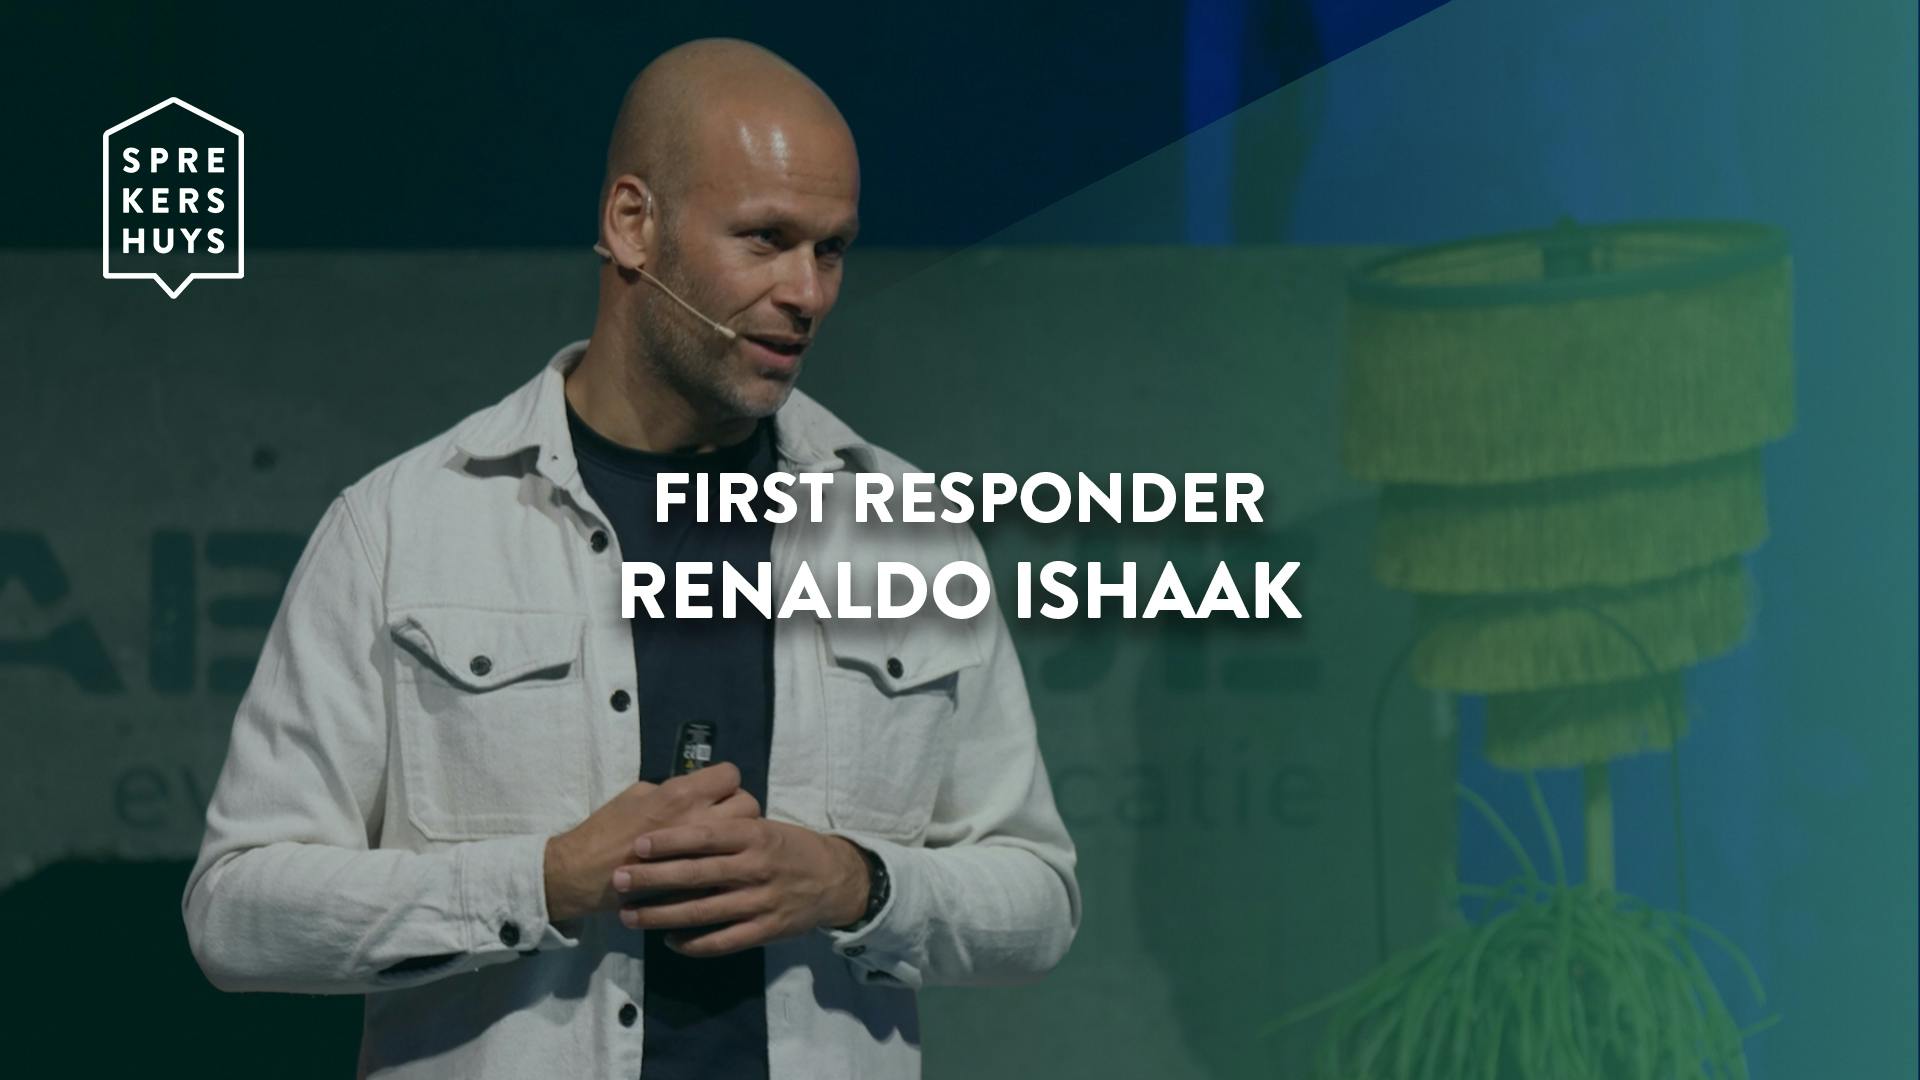 Renaldo Ishaak in witte spijkerjas aan het spreken met groene gloed over zich met tekst 'first responder Renaldo Ishaak'